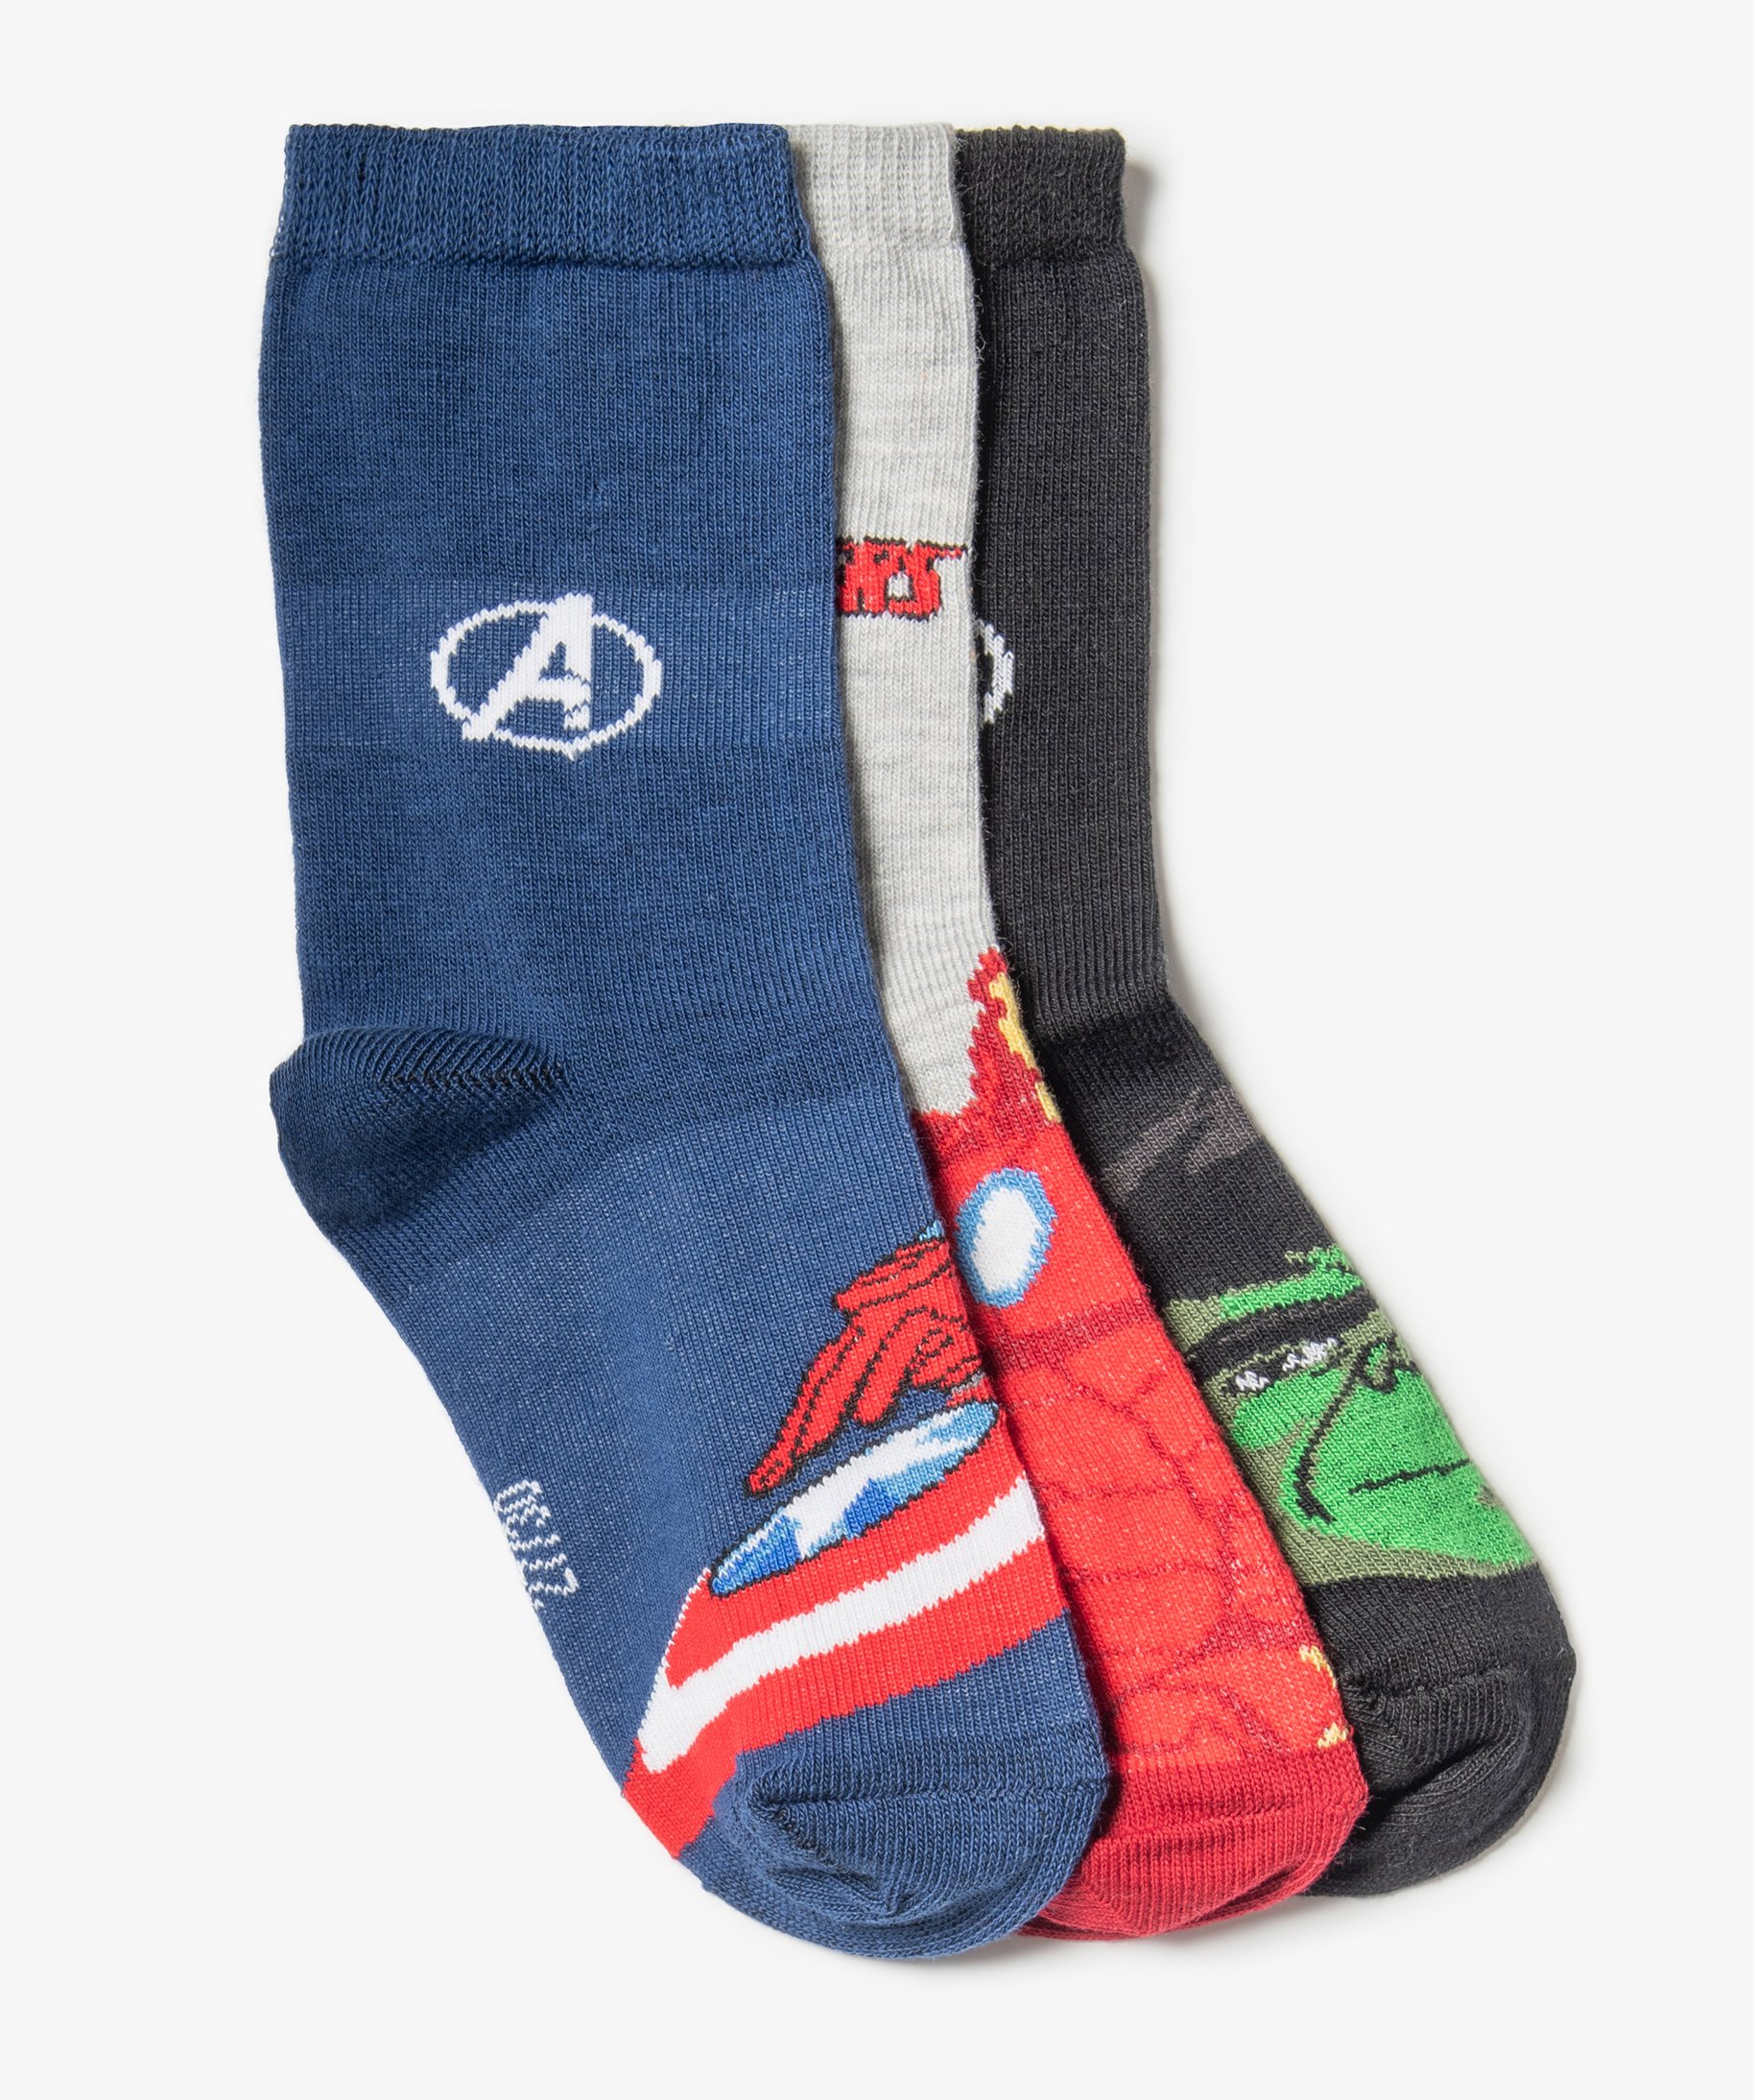 Chaussettes Marvel - Lot de 5 paires Marvel Avengers 31/34